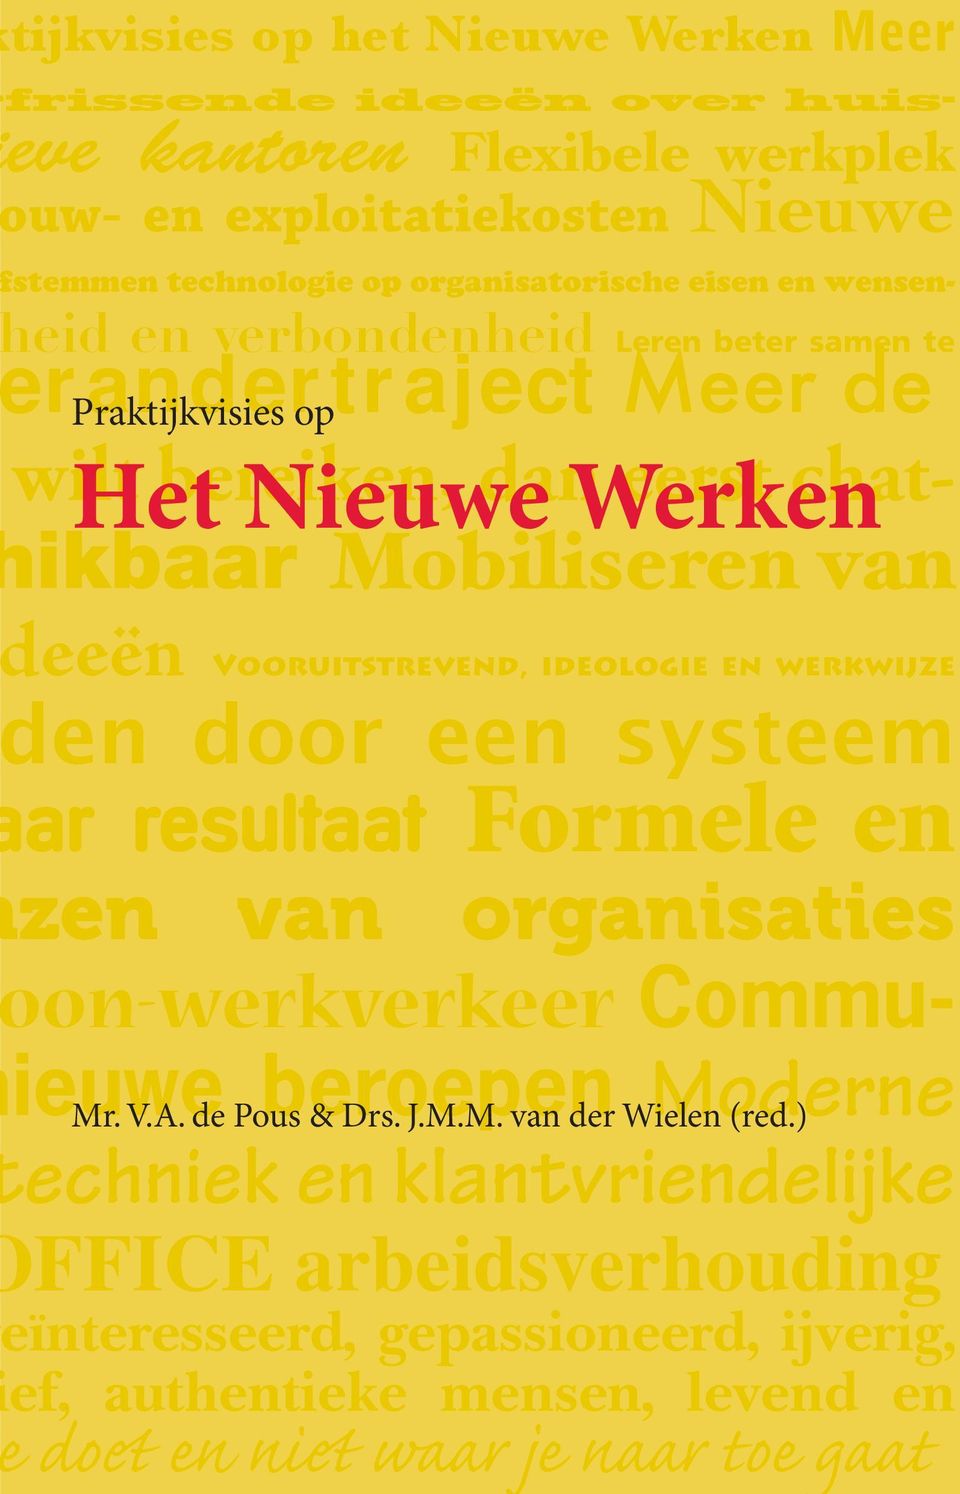 werkwijze ar resultaat Formele en zen van organisaties on-werkverkeer Commuieuwe Mr. V.A. de Pous beroepen & Drs. J.M.M. van der Wielen Moderne (red.